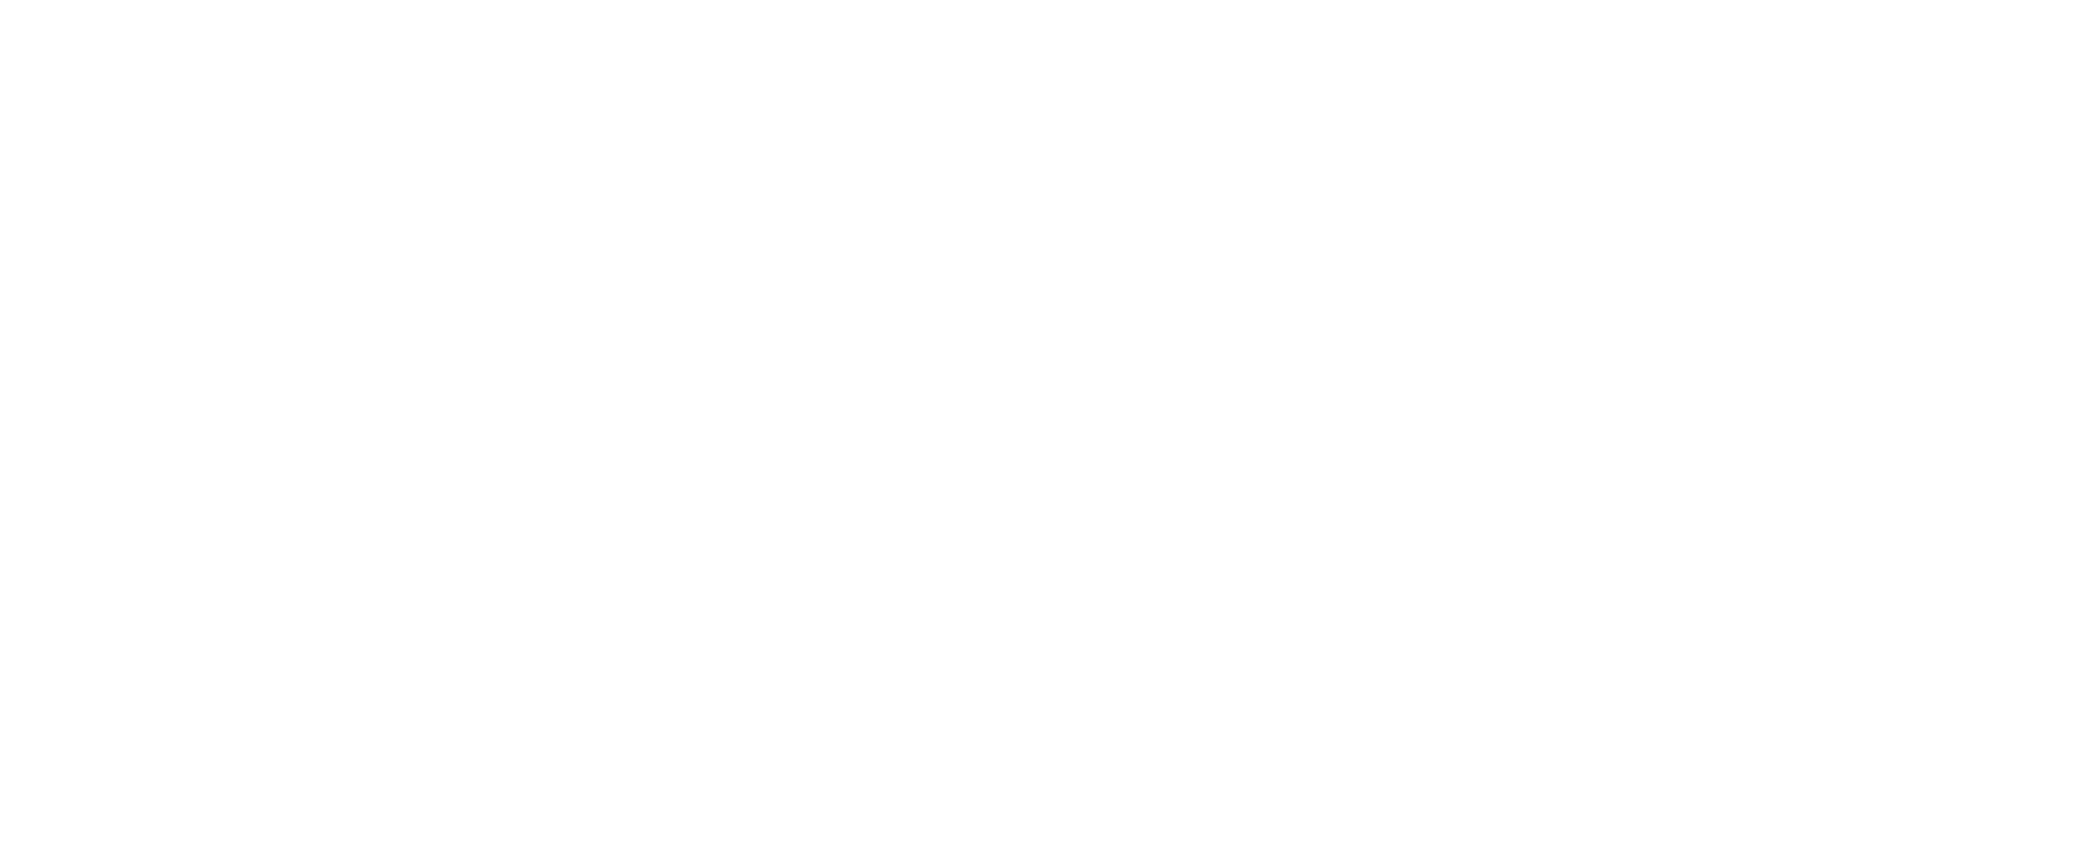 Wave Life Sciences logo large for dark backgrounds (transparent PNG)